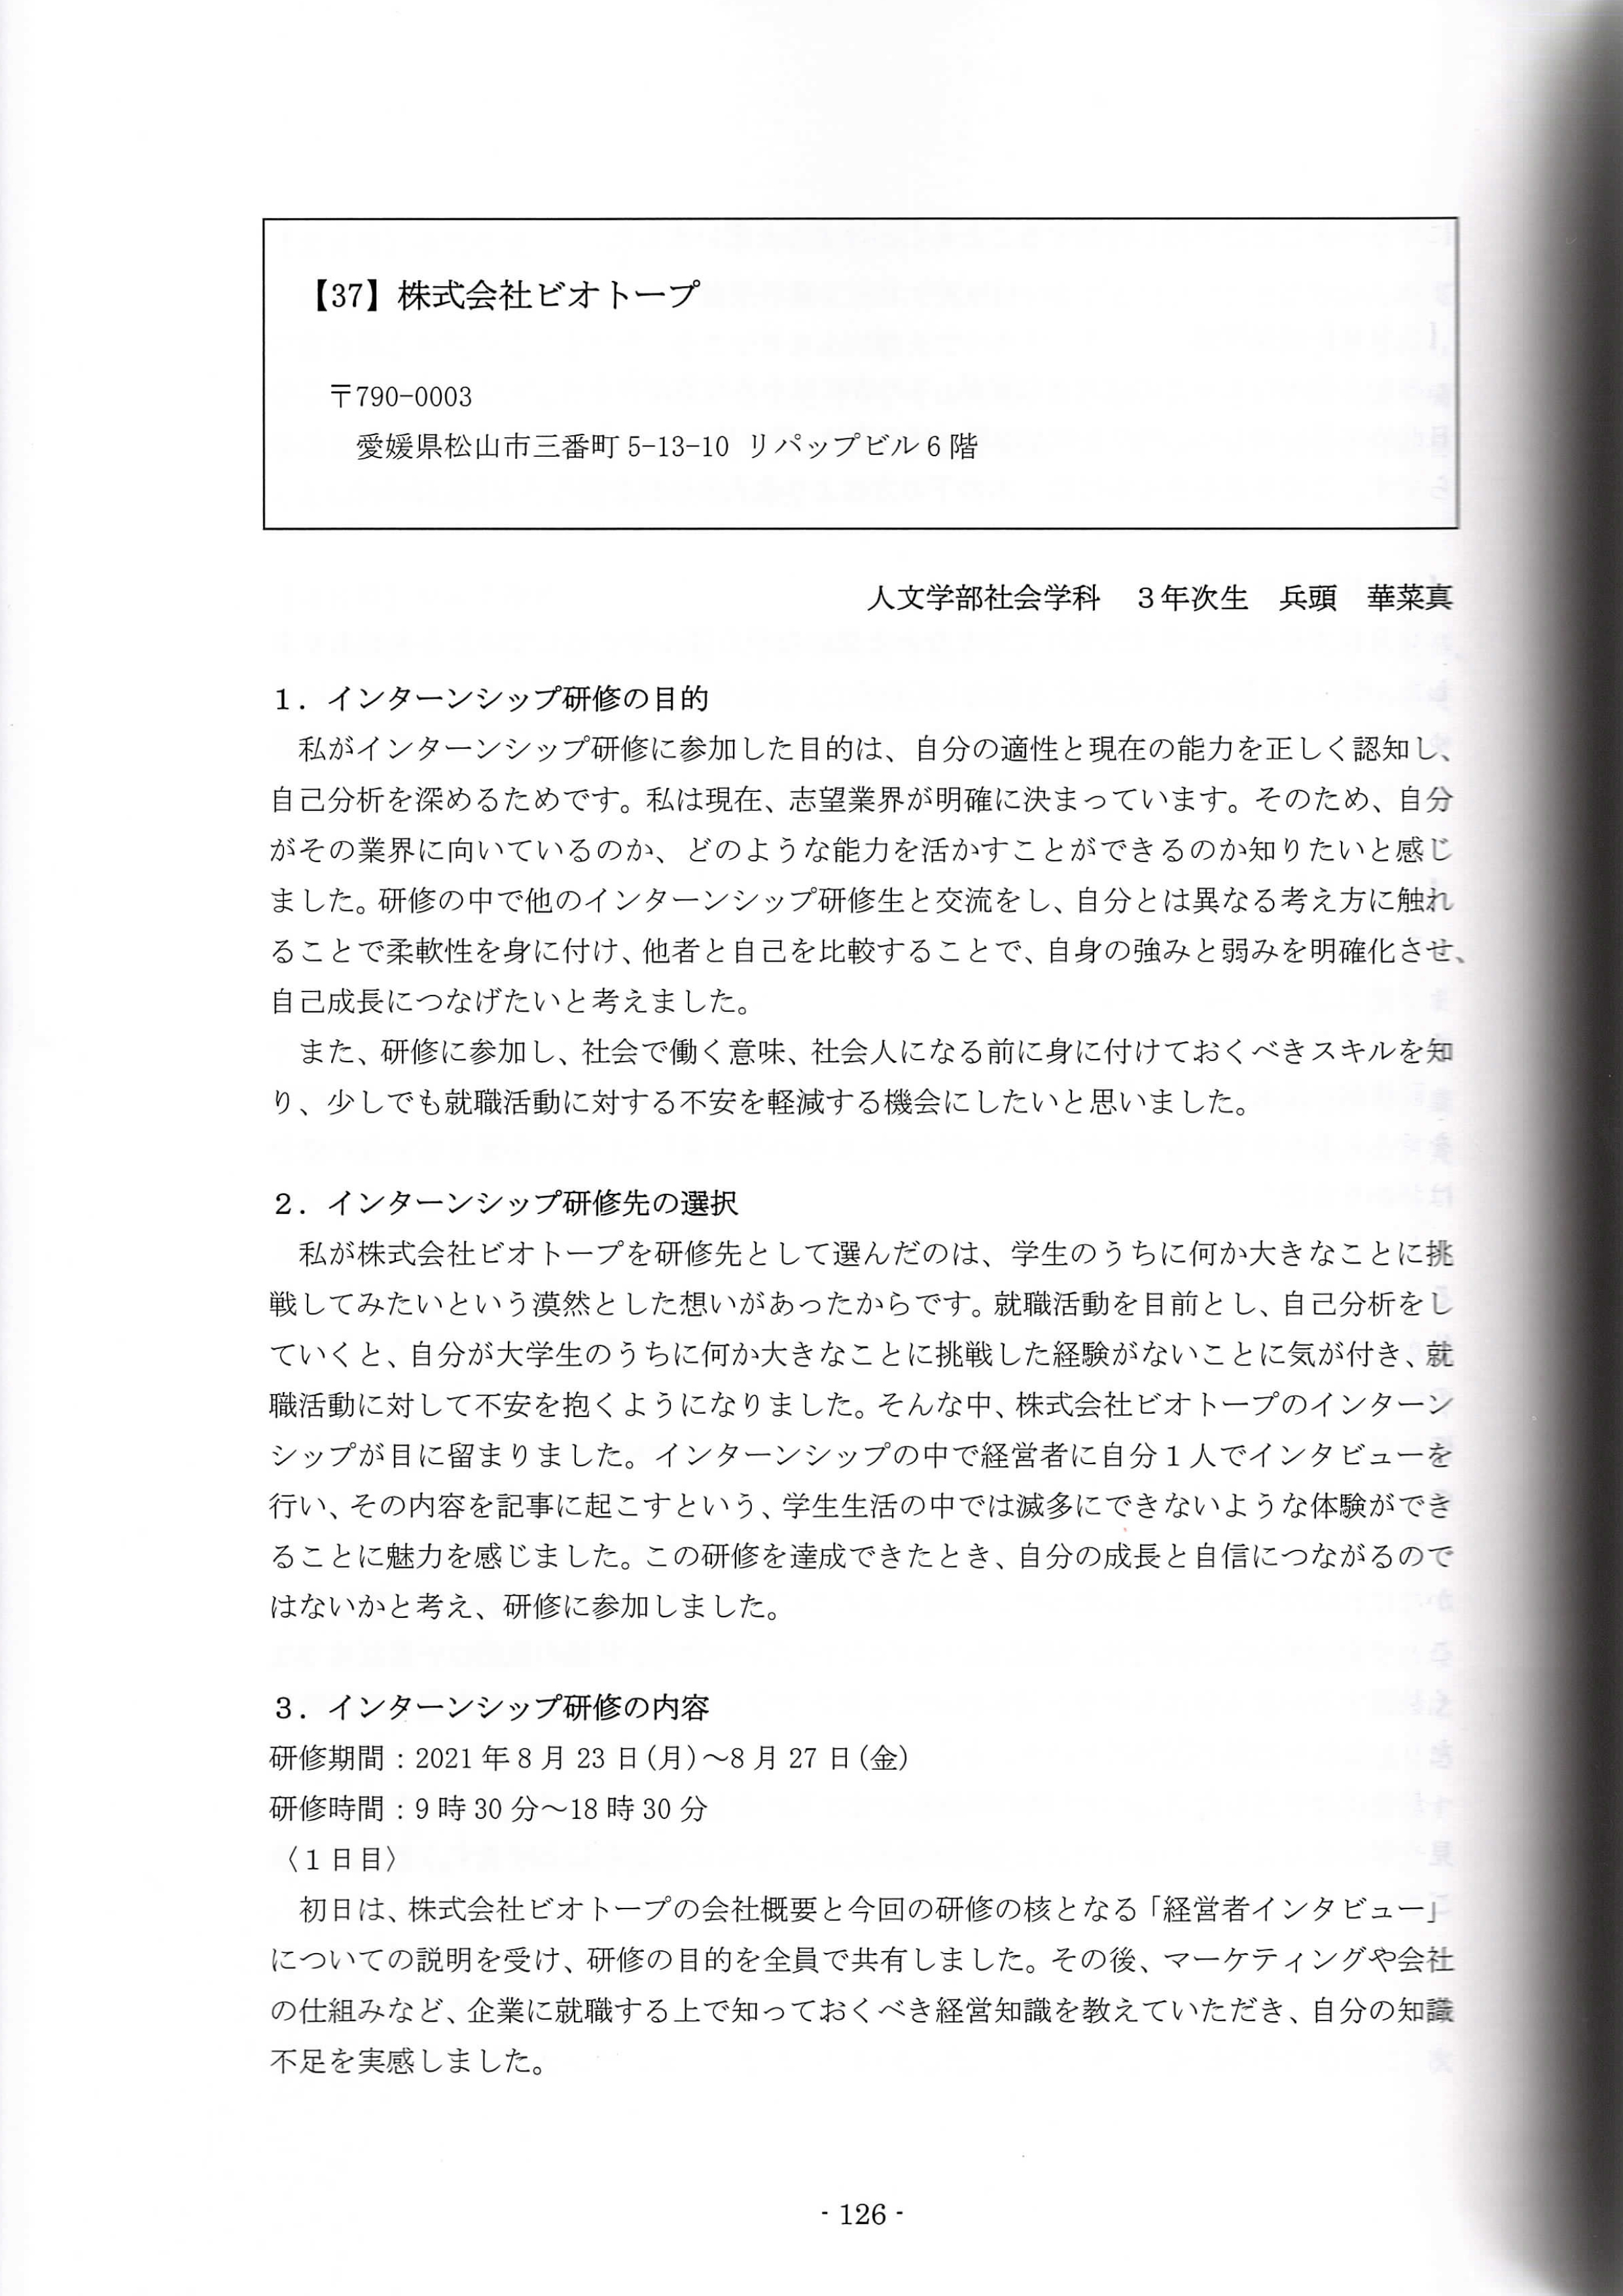 松山大学インターンシップ研修報告書(2021年度) No1